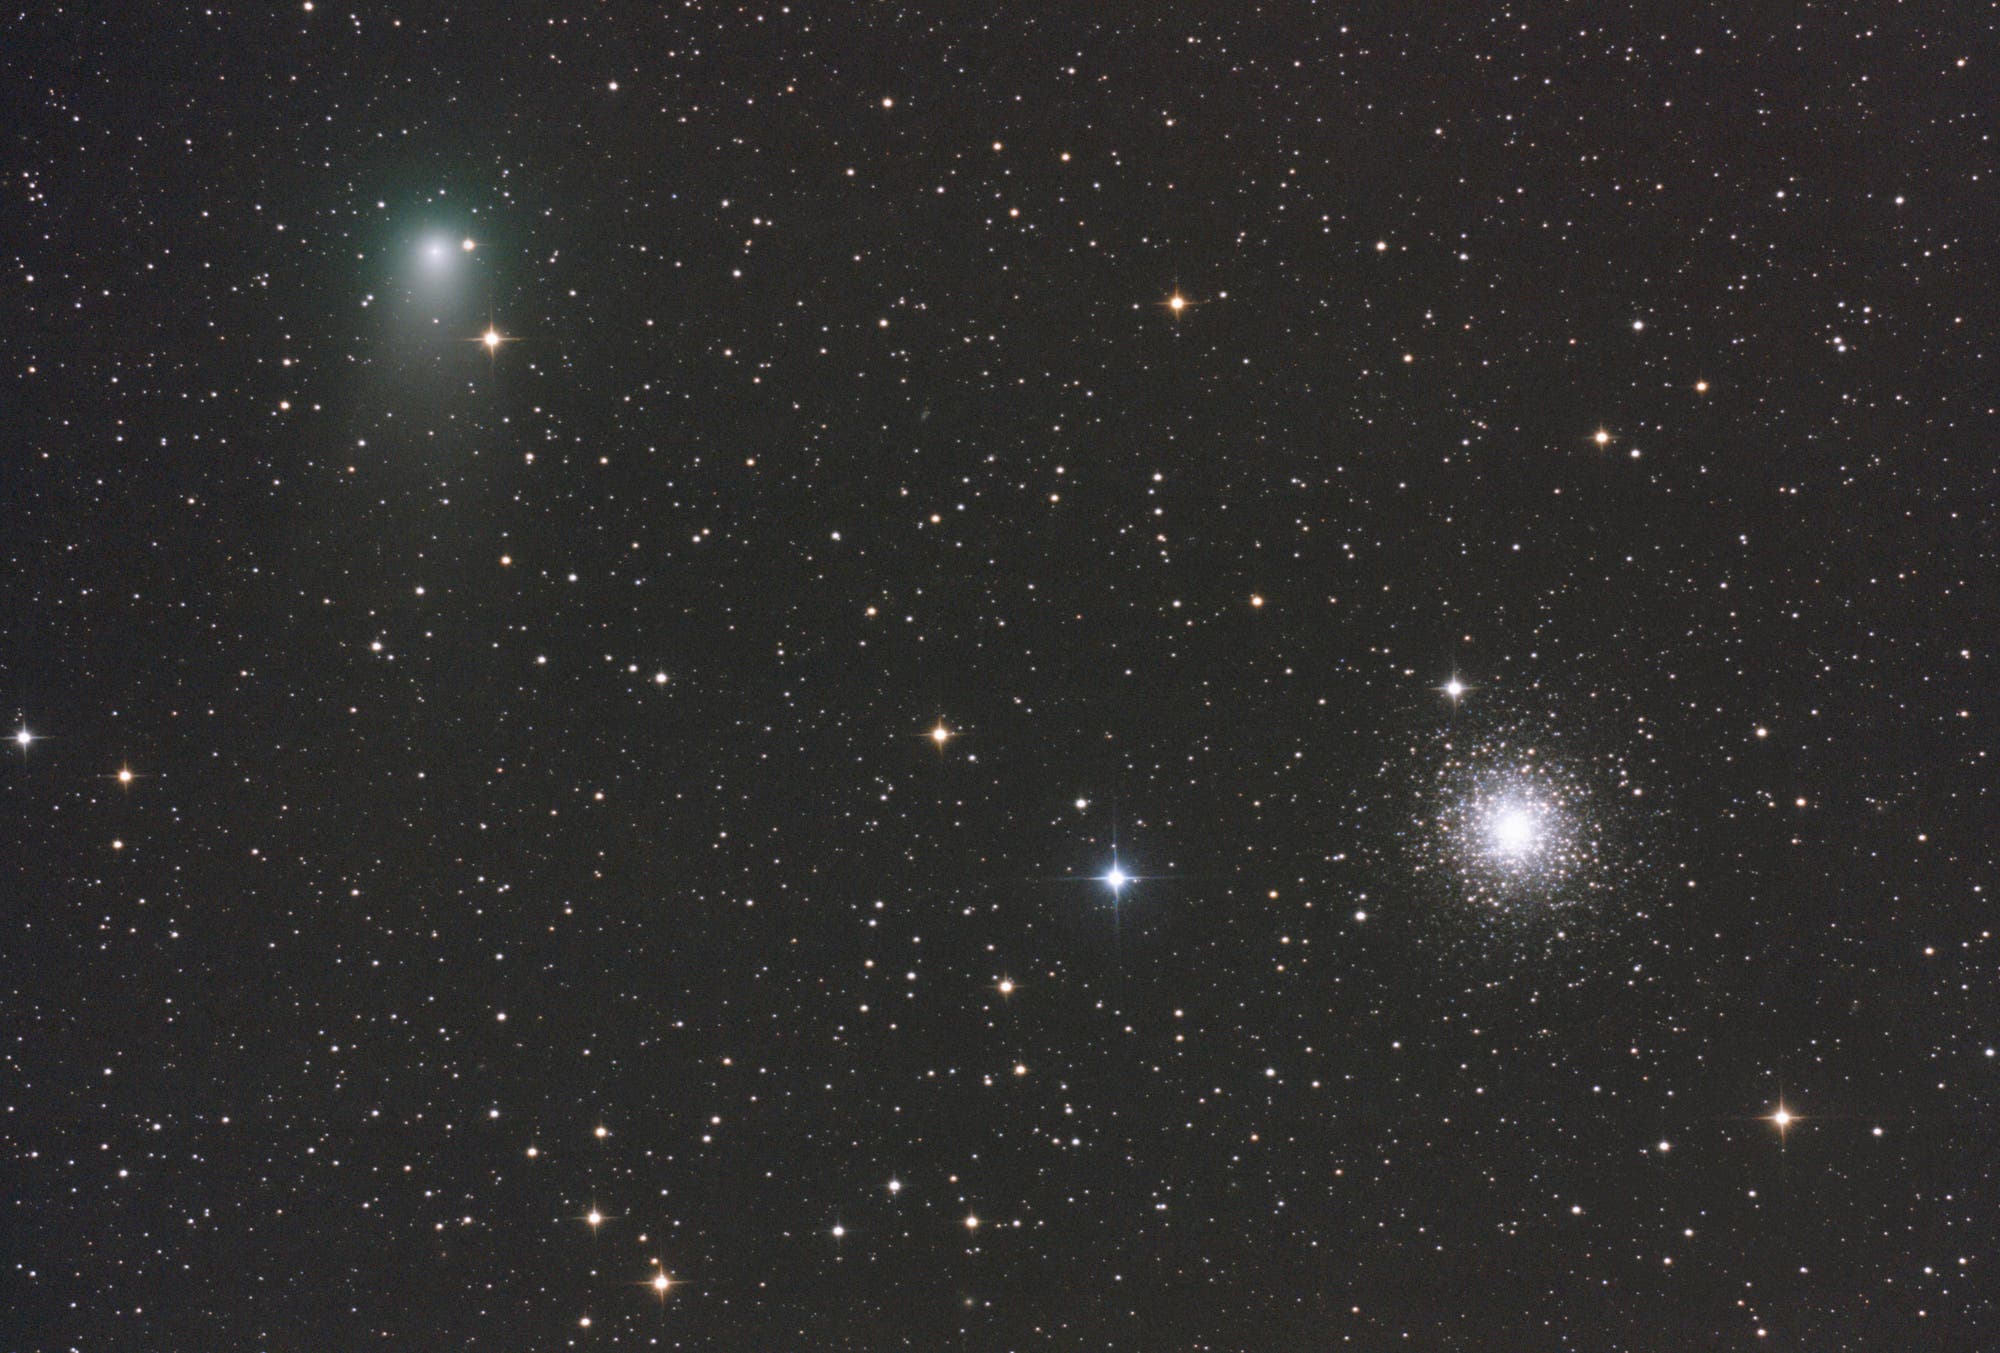 Komet C/2009 P1 Garradd bei M 15